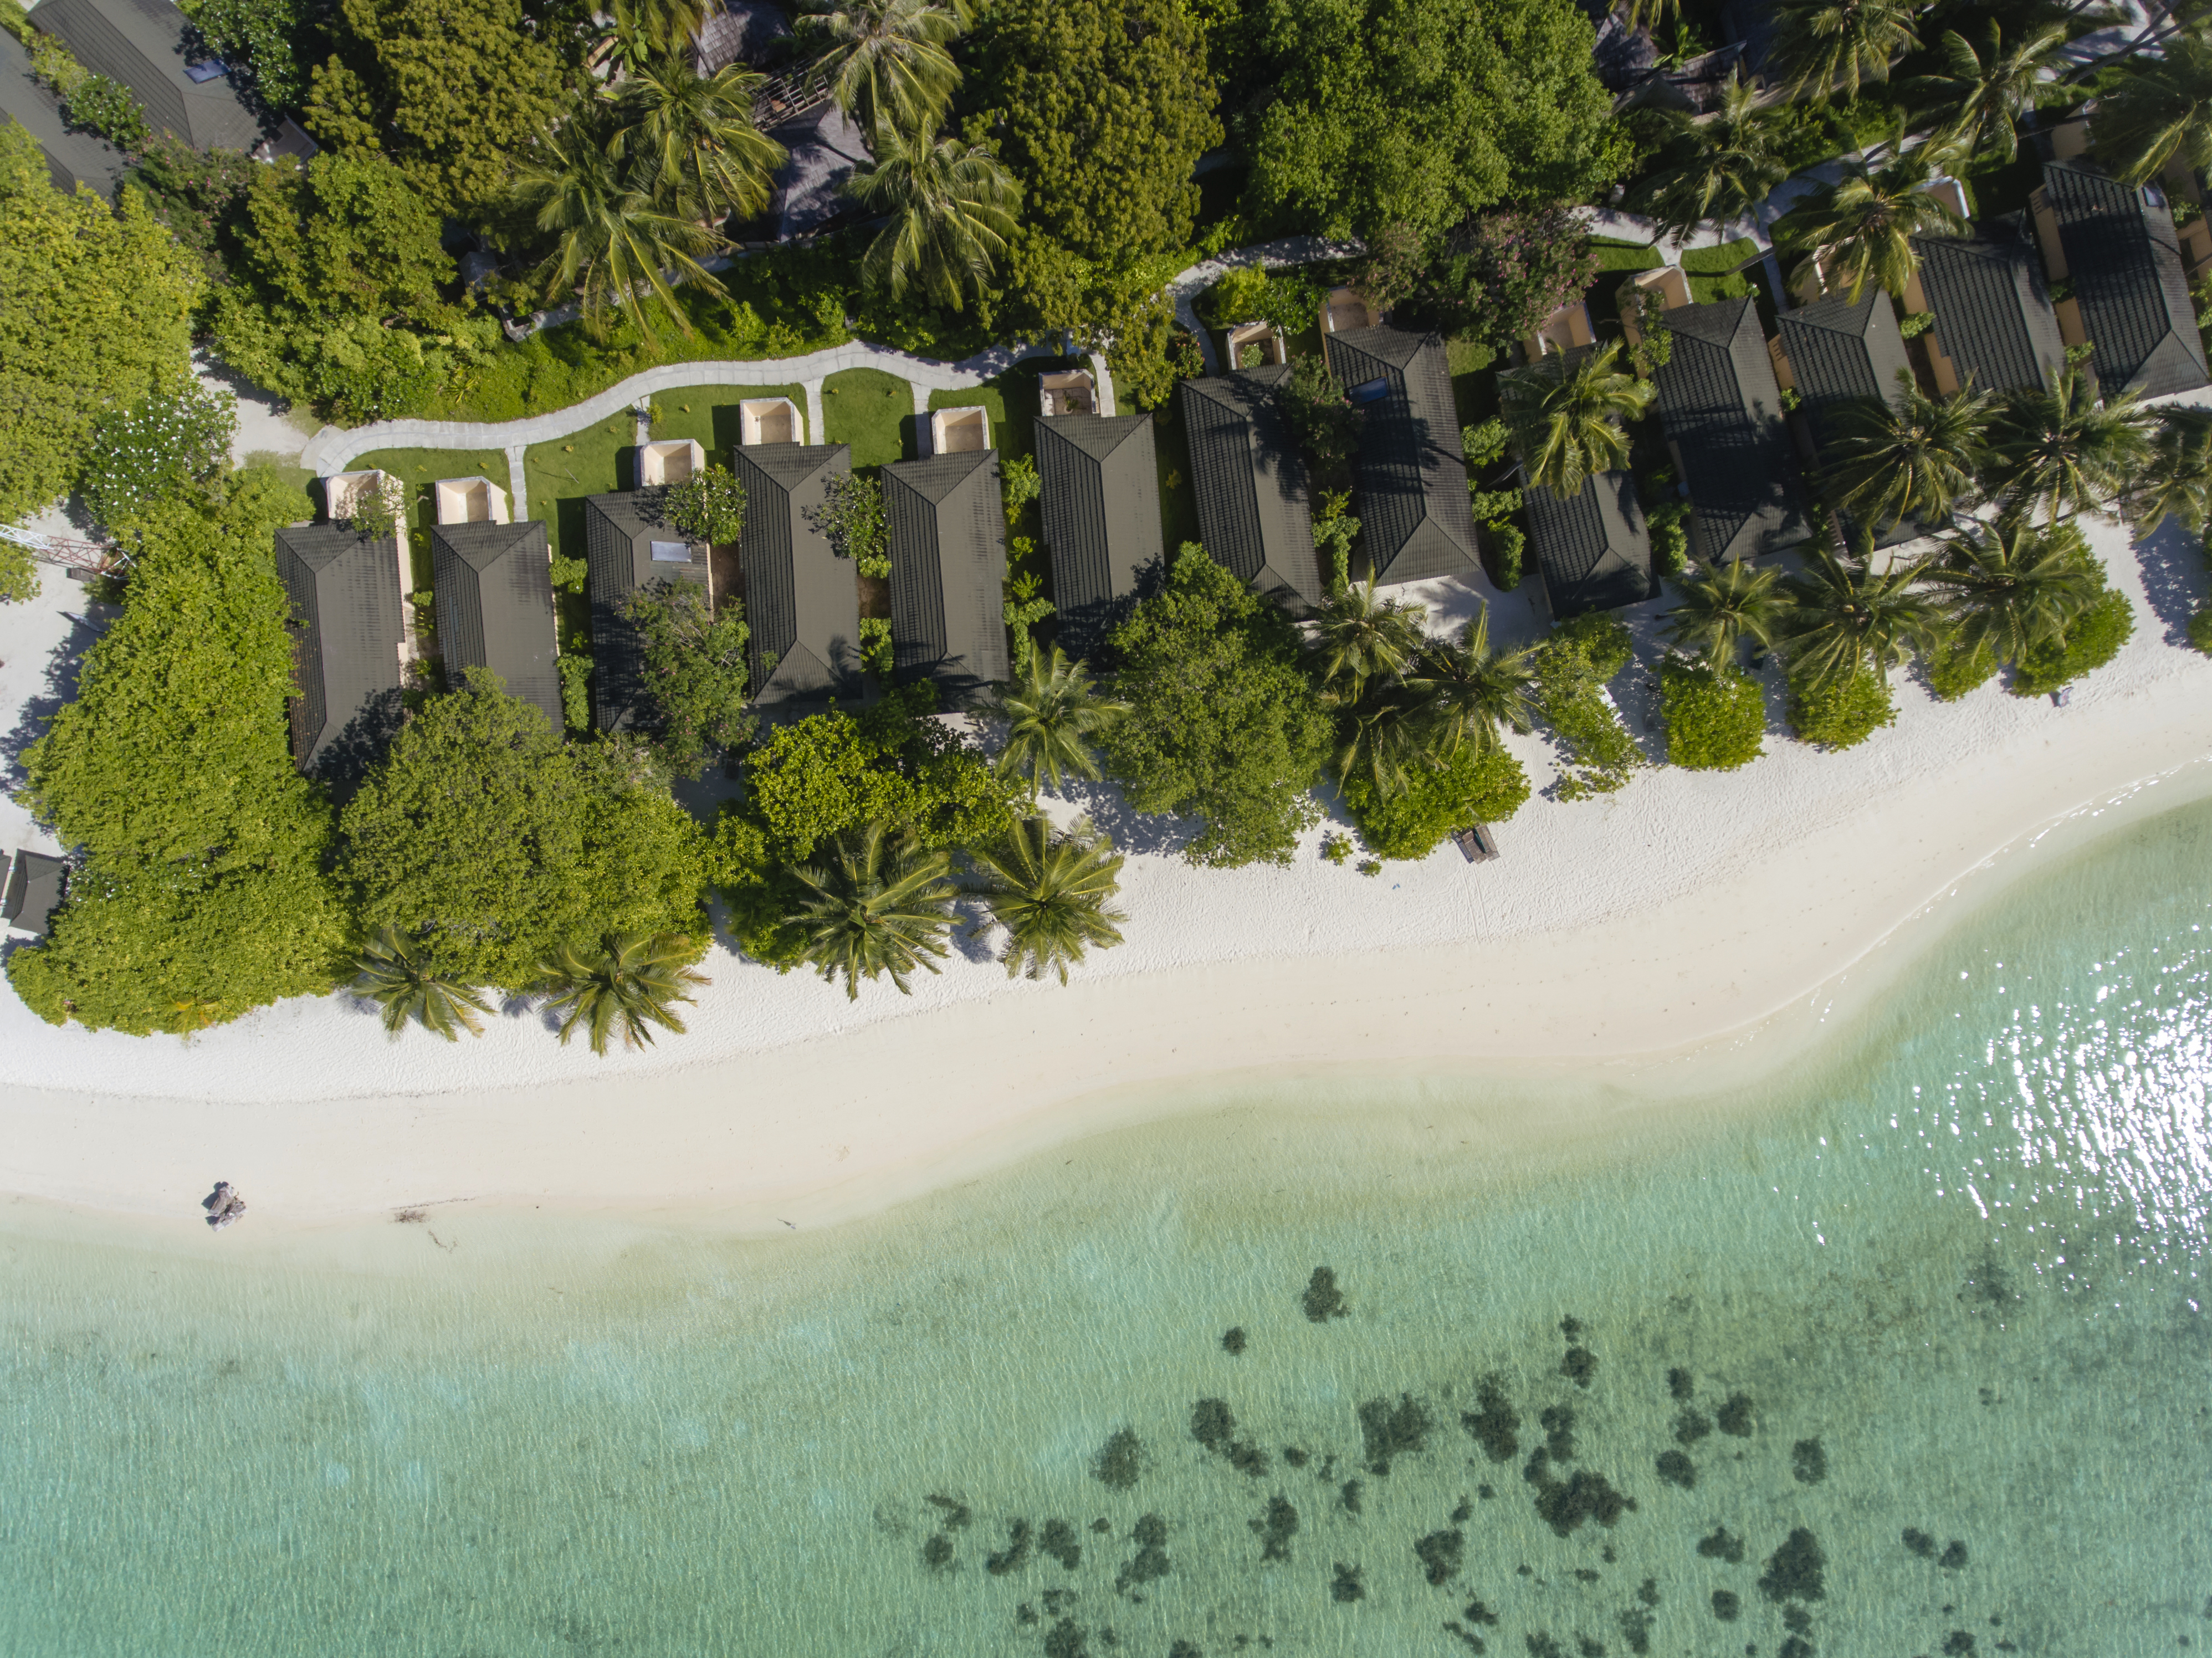 Fotografie cu Holiday Island Resort - locul popular printre cunoscătorii de relaxare